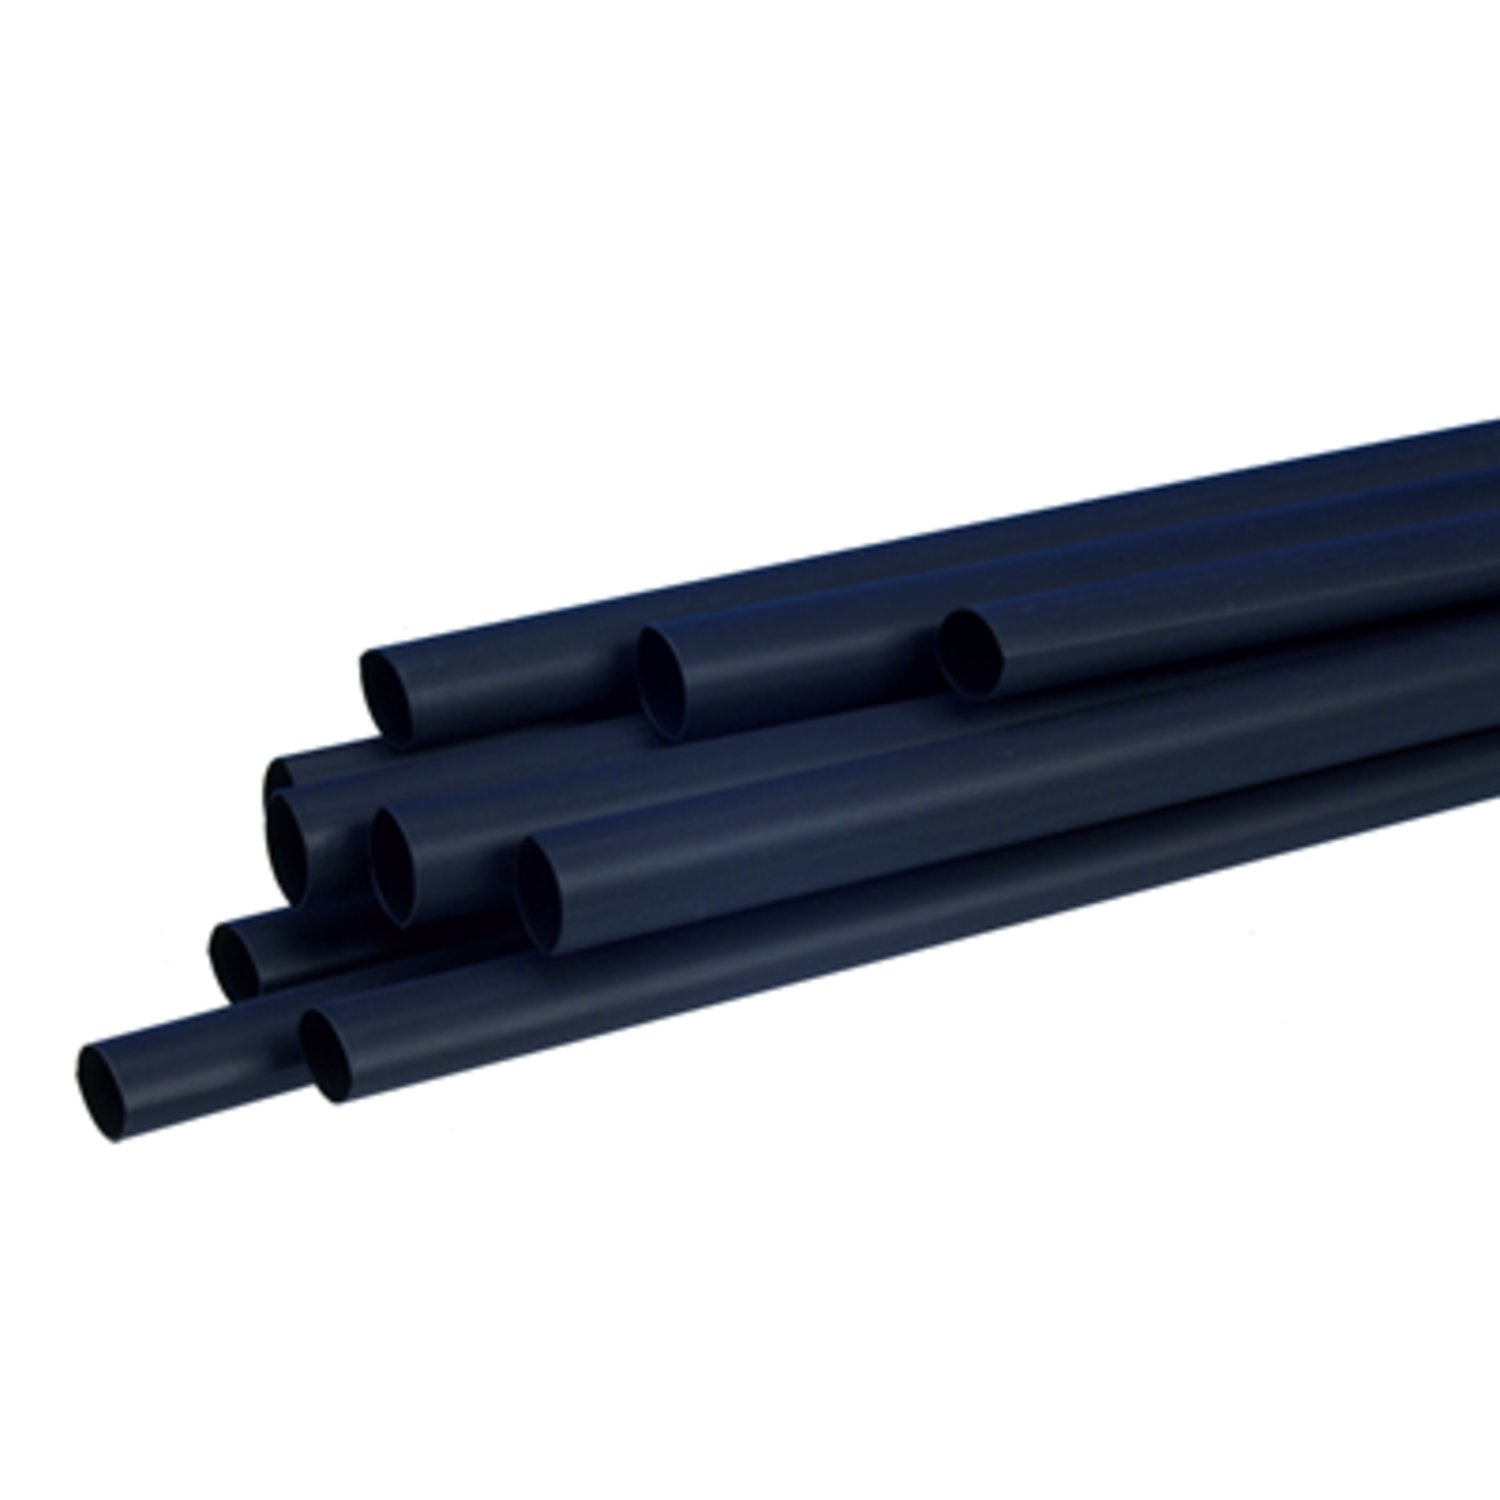 7100025736 - 3M SFTW-203 Heat Shrink Tubing Polyolefin, Black, 12.0/4.0 mm, 61 m
Roll